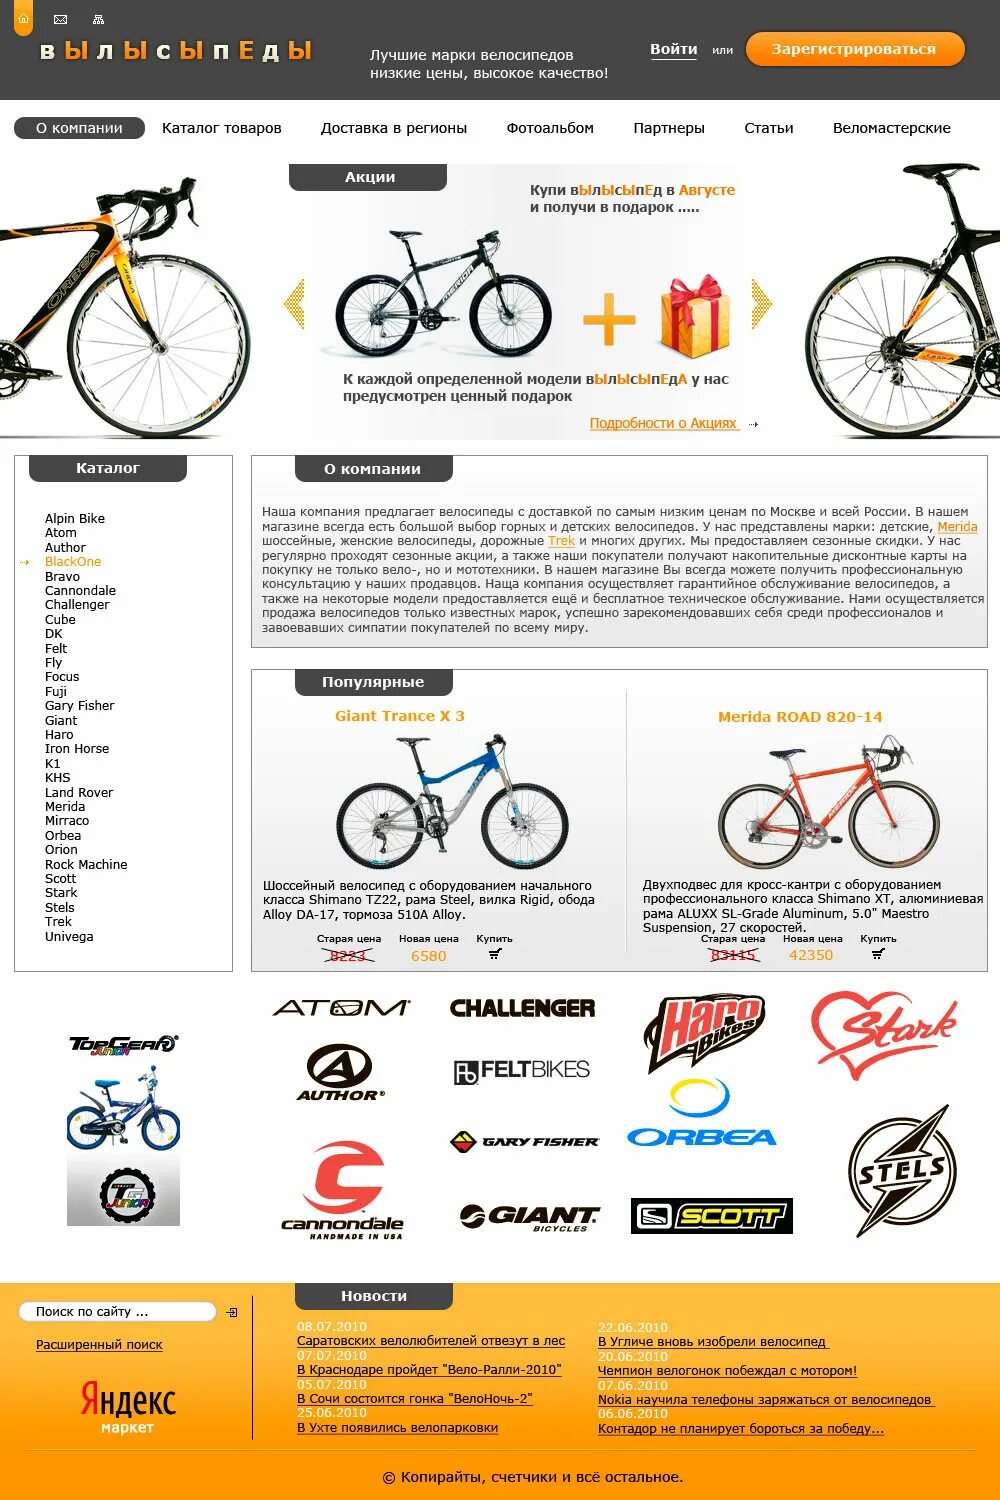 Велосипеды какие бренды. Марки велосипедов список. Велосипедные бренды. Фирмы велосипедов. Логотипы велосипедов бренды.